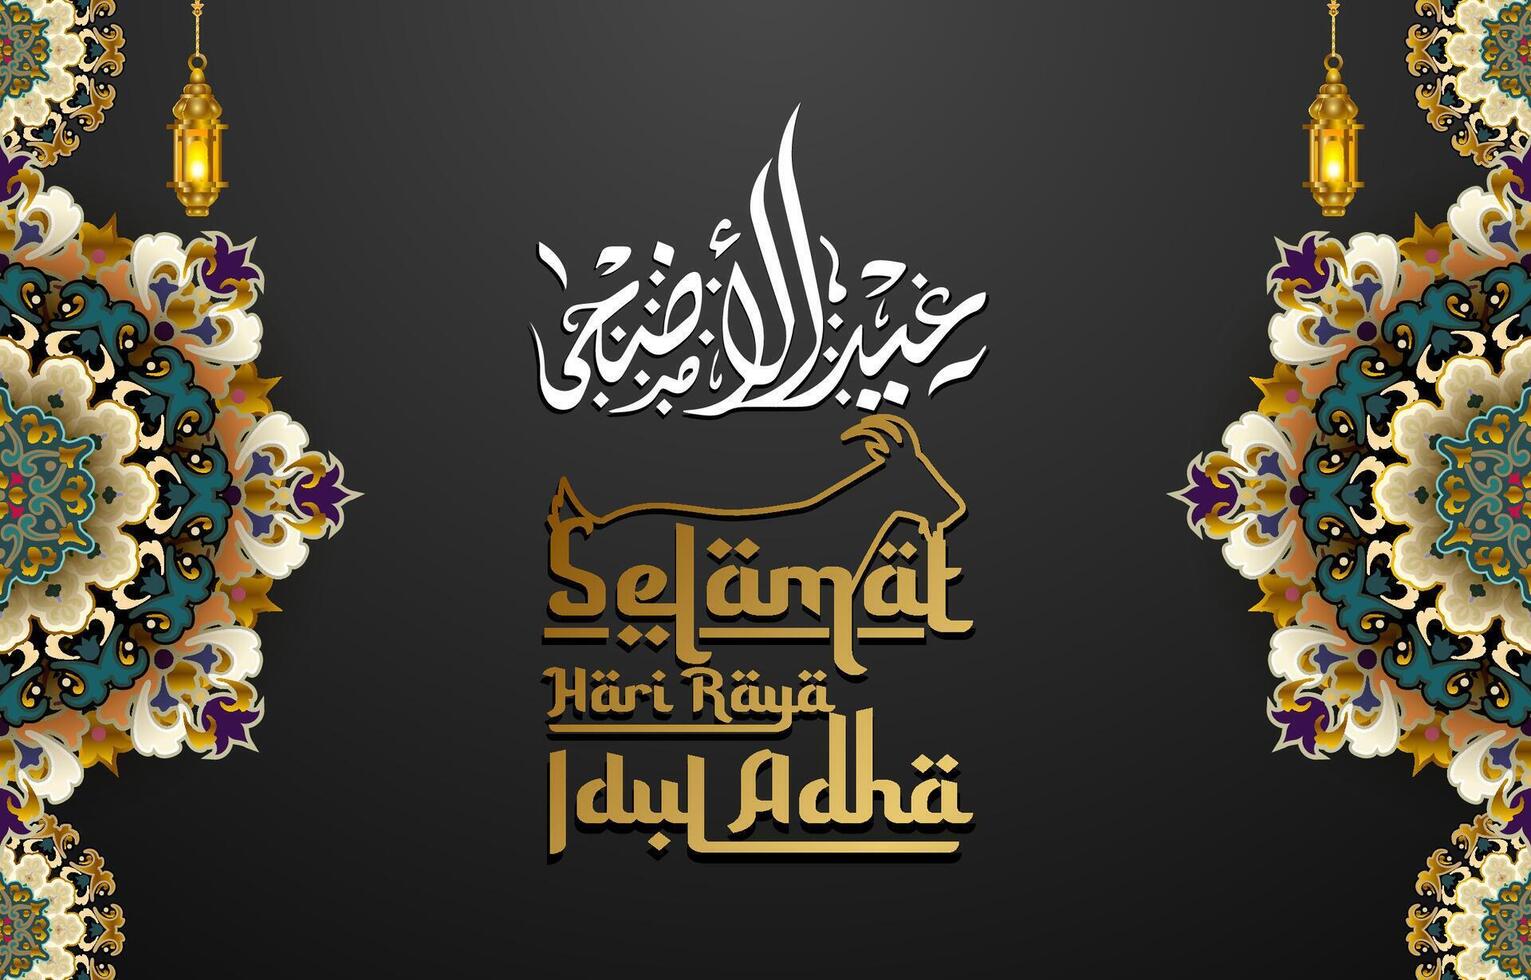 magnifique eid adha Contexte avec islamique ornamnet décoration vecteur